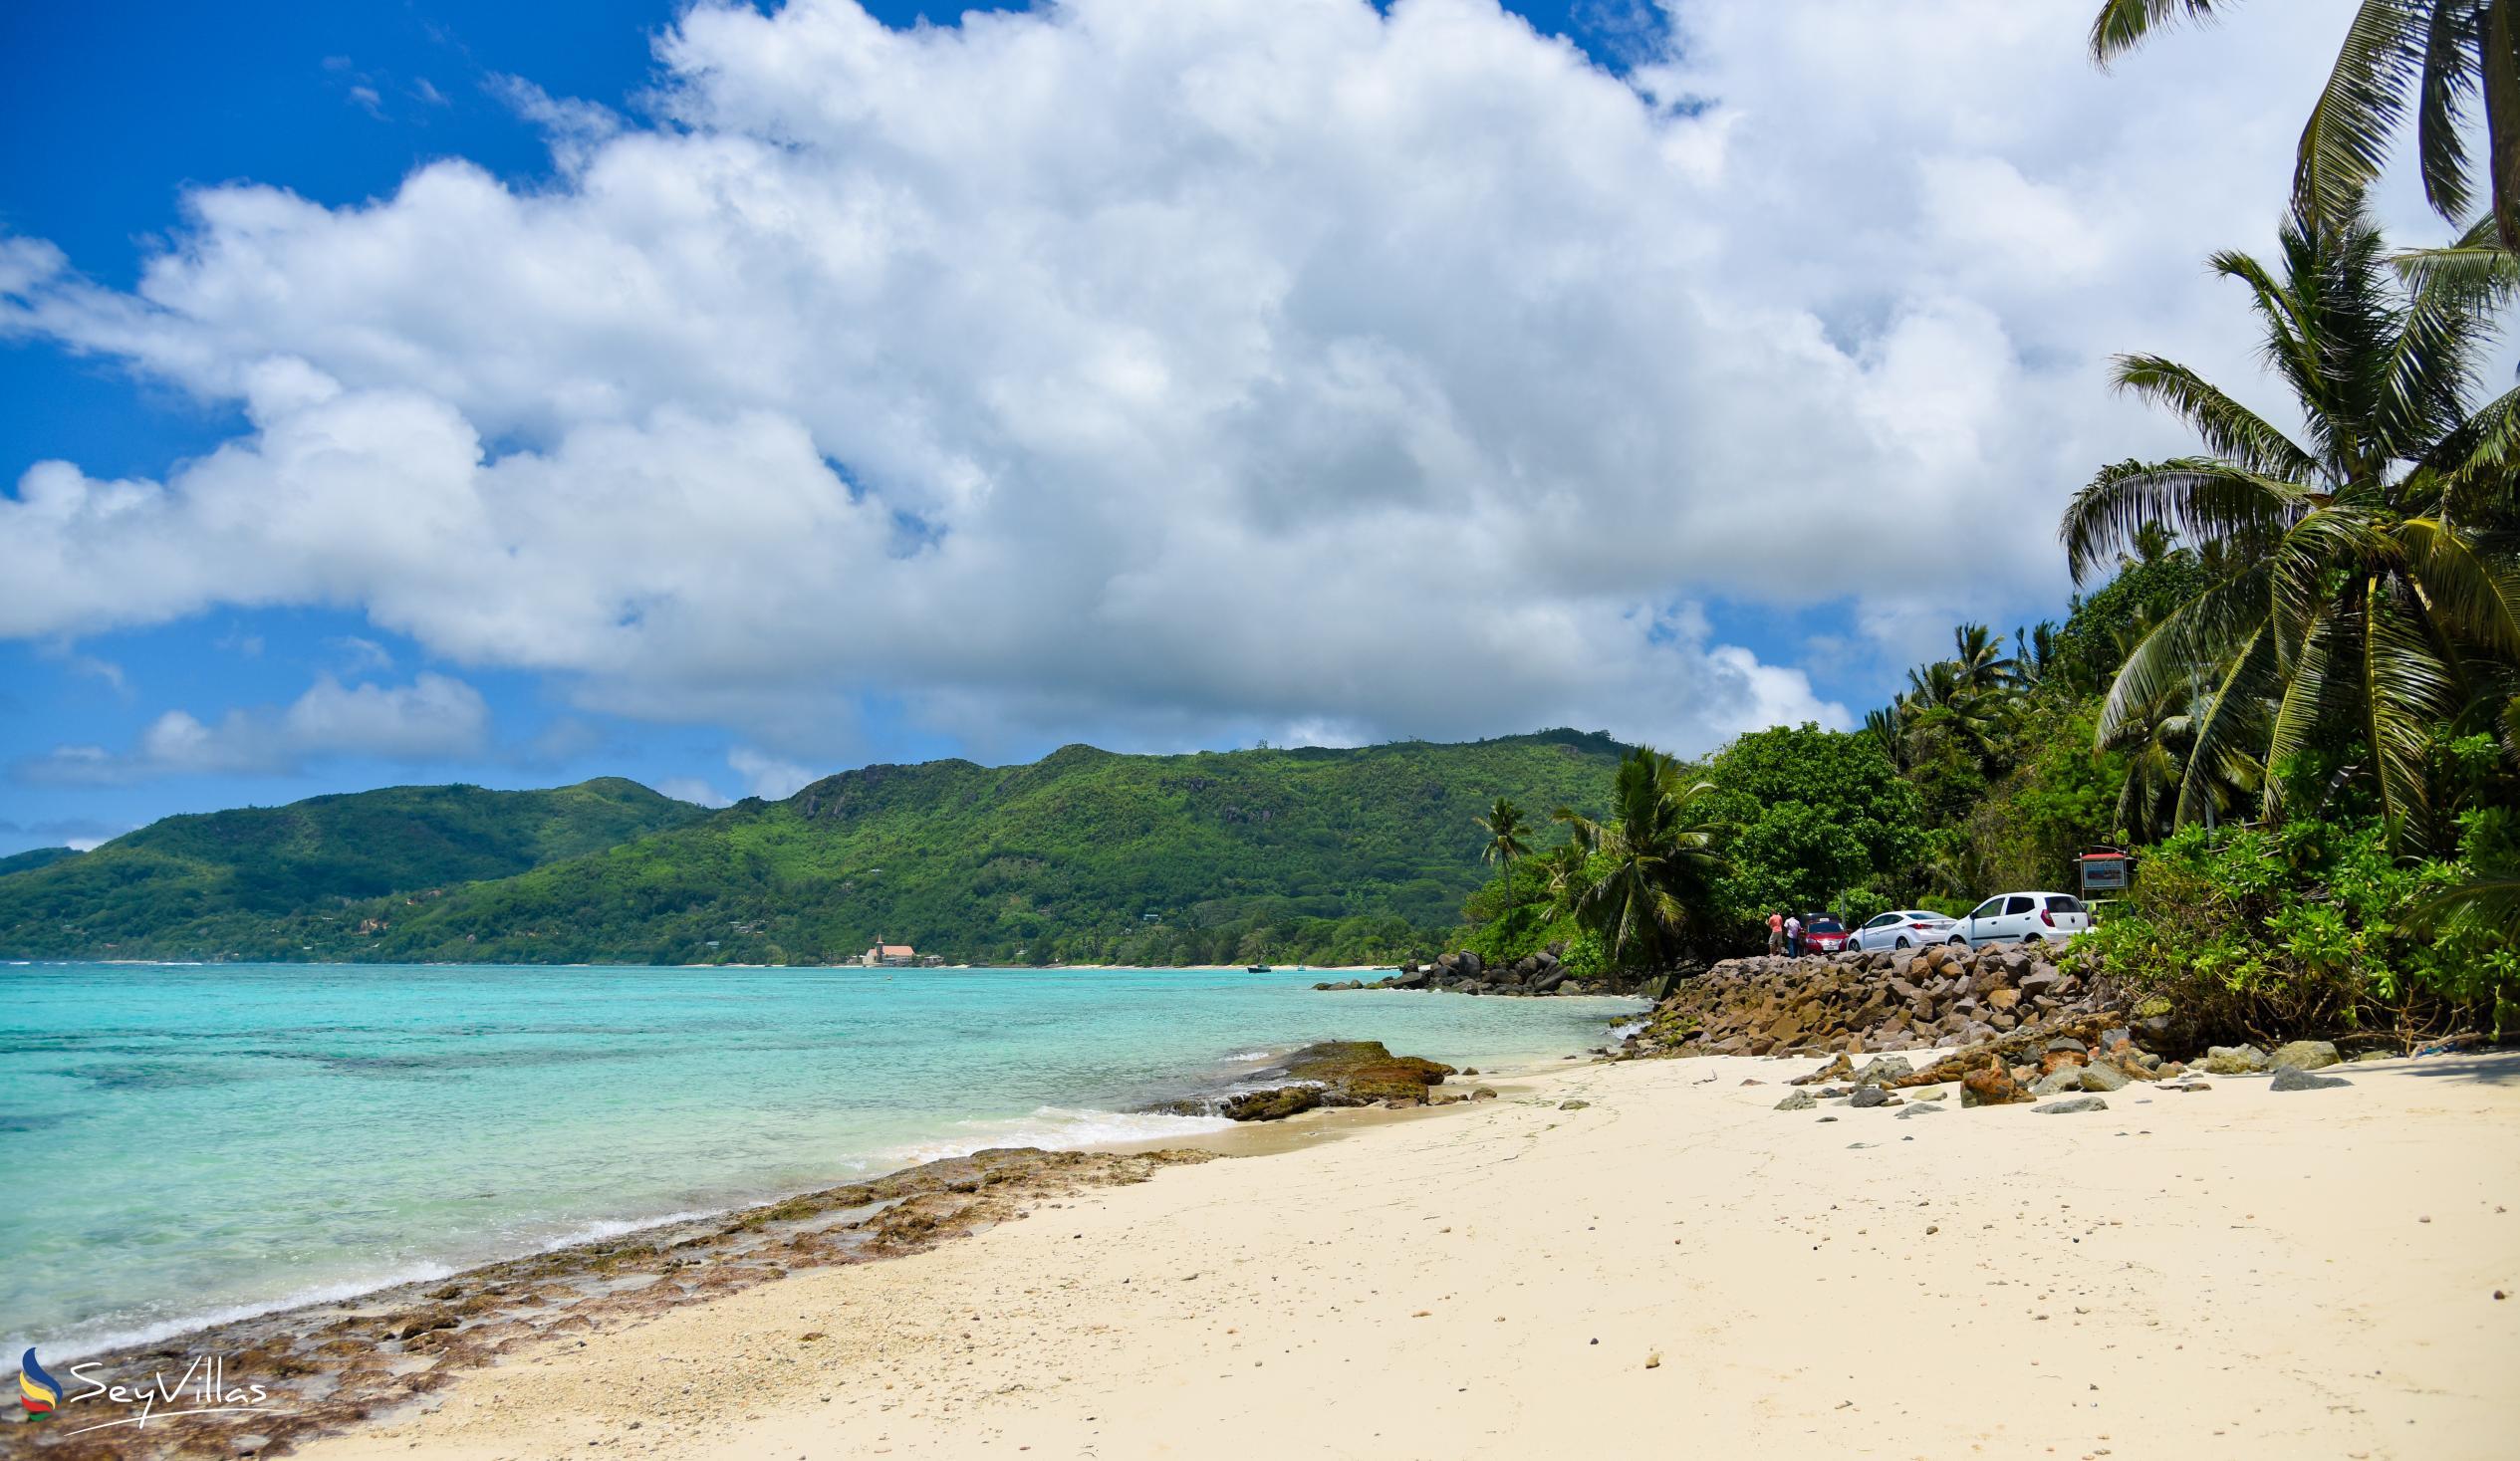 Photo 15: Fairyland Beach (Relax Beach) - Mahé (Seychelles)